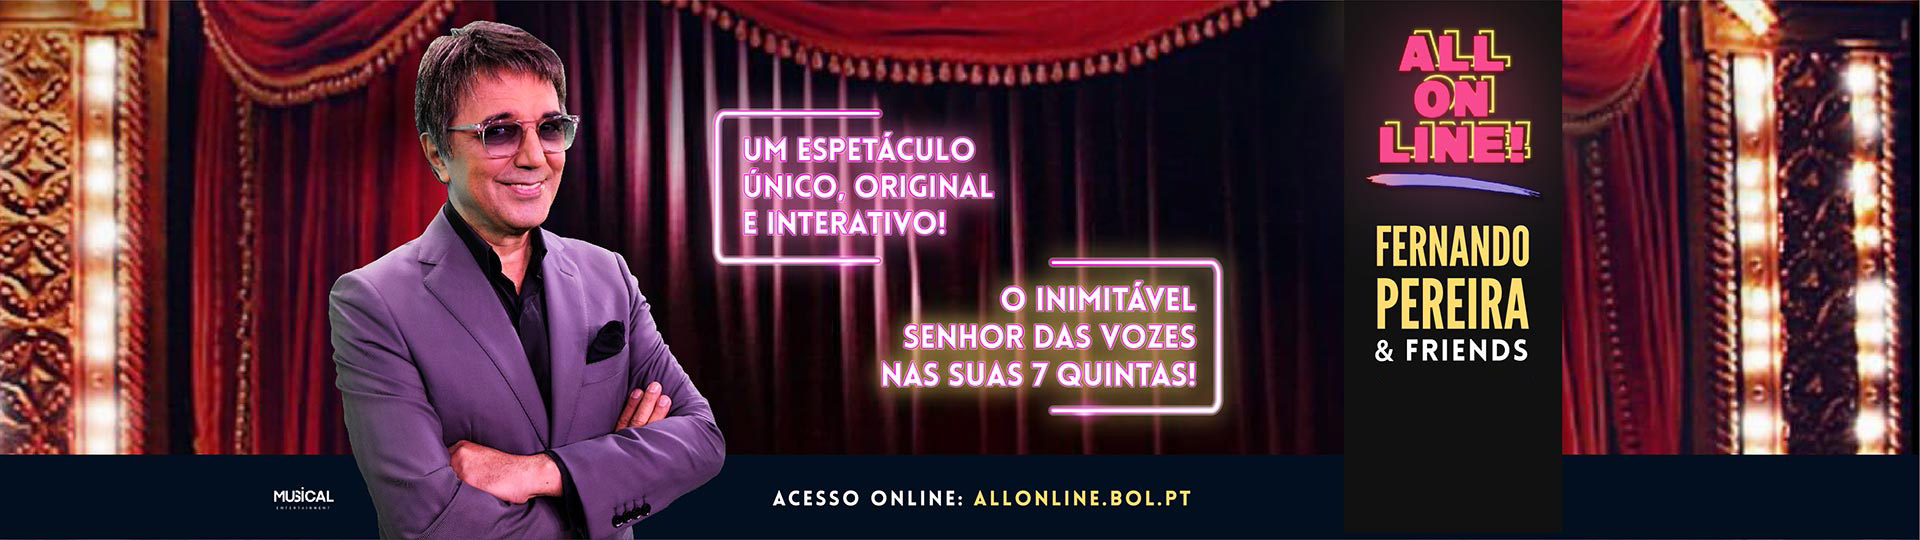 All On Line - Fernando Pereira